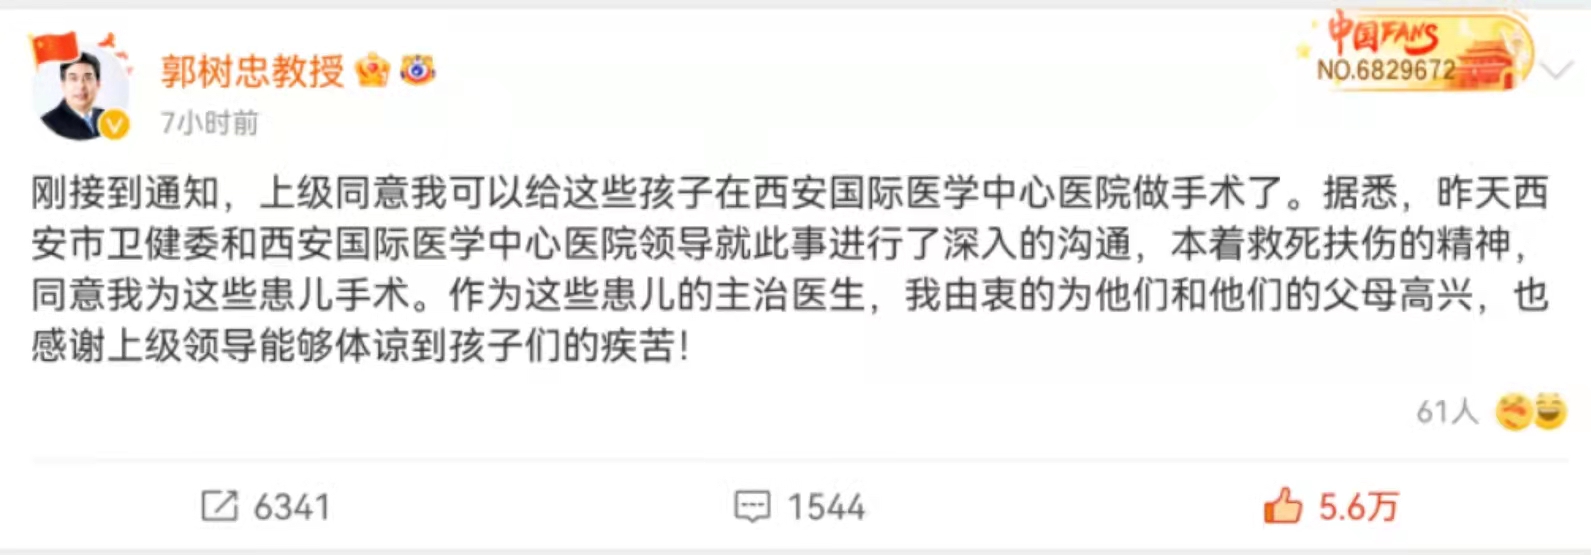 郭树忠称，他将继续在任职医院为患者进行手术。来源： 微博截图